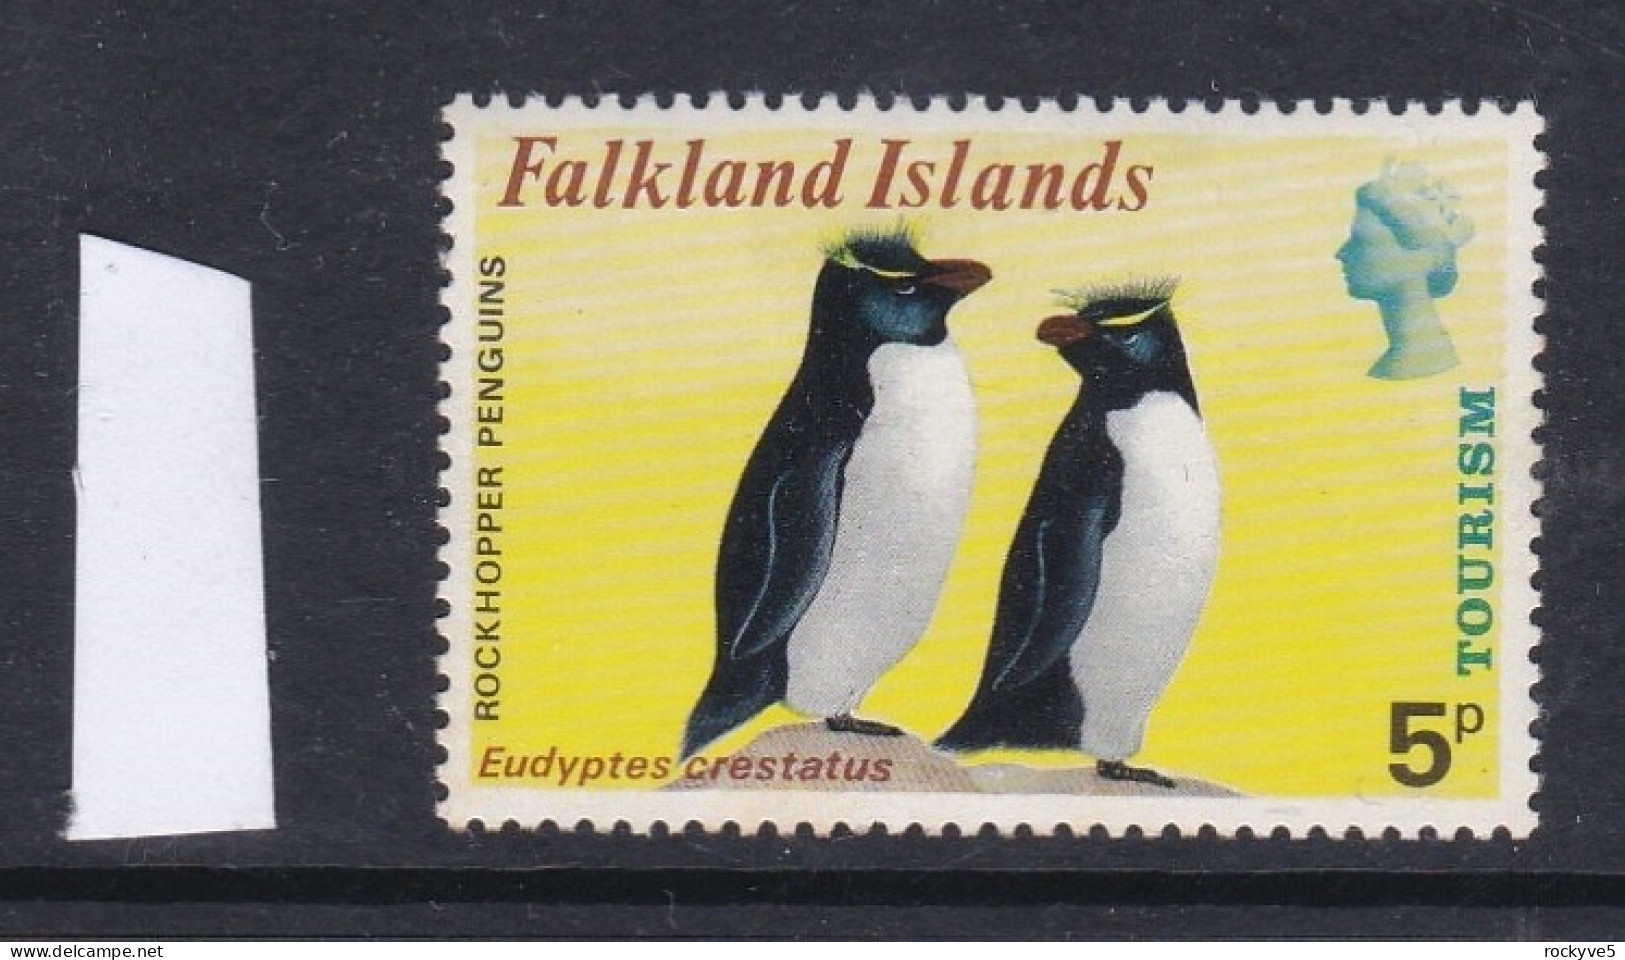 Falkland Islands 1974 Tourism 5p MNH CV £8.00 SP £2.99 - Falklandinseln